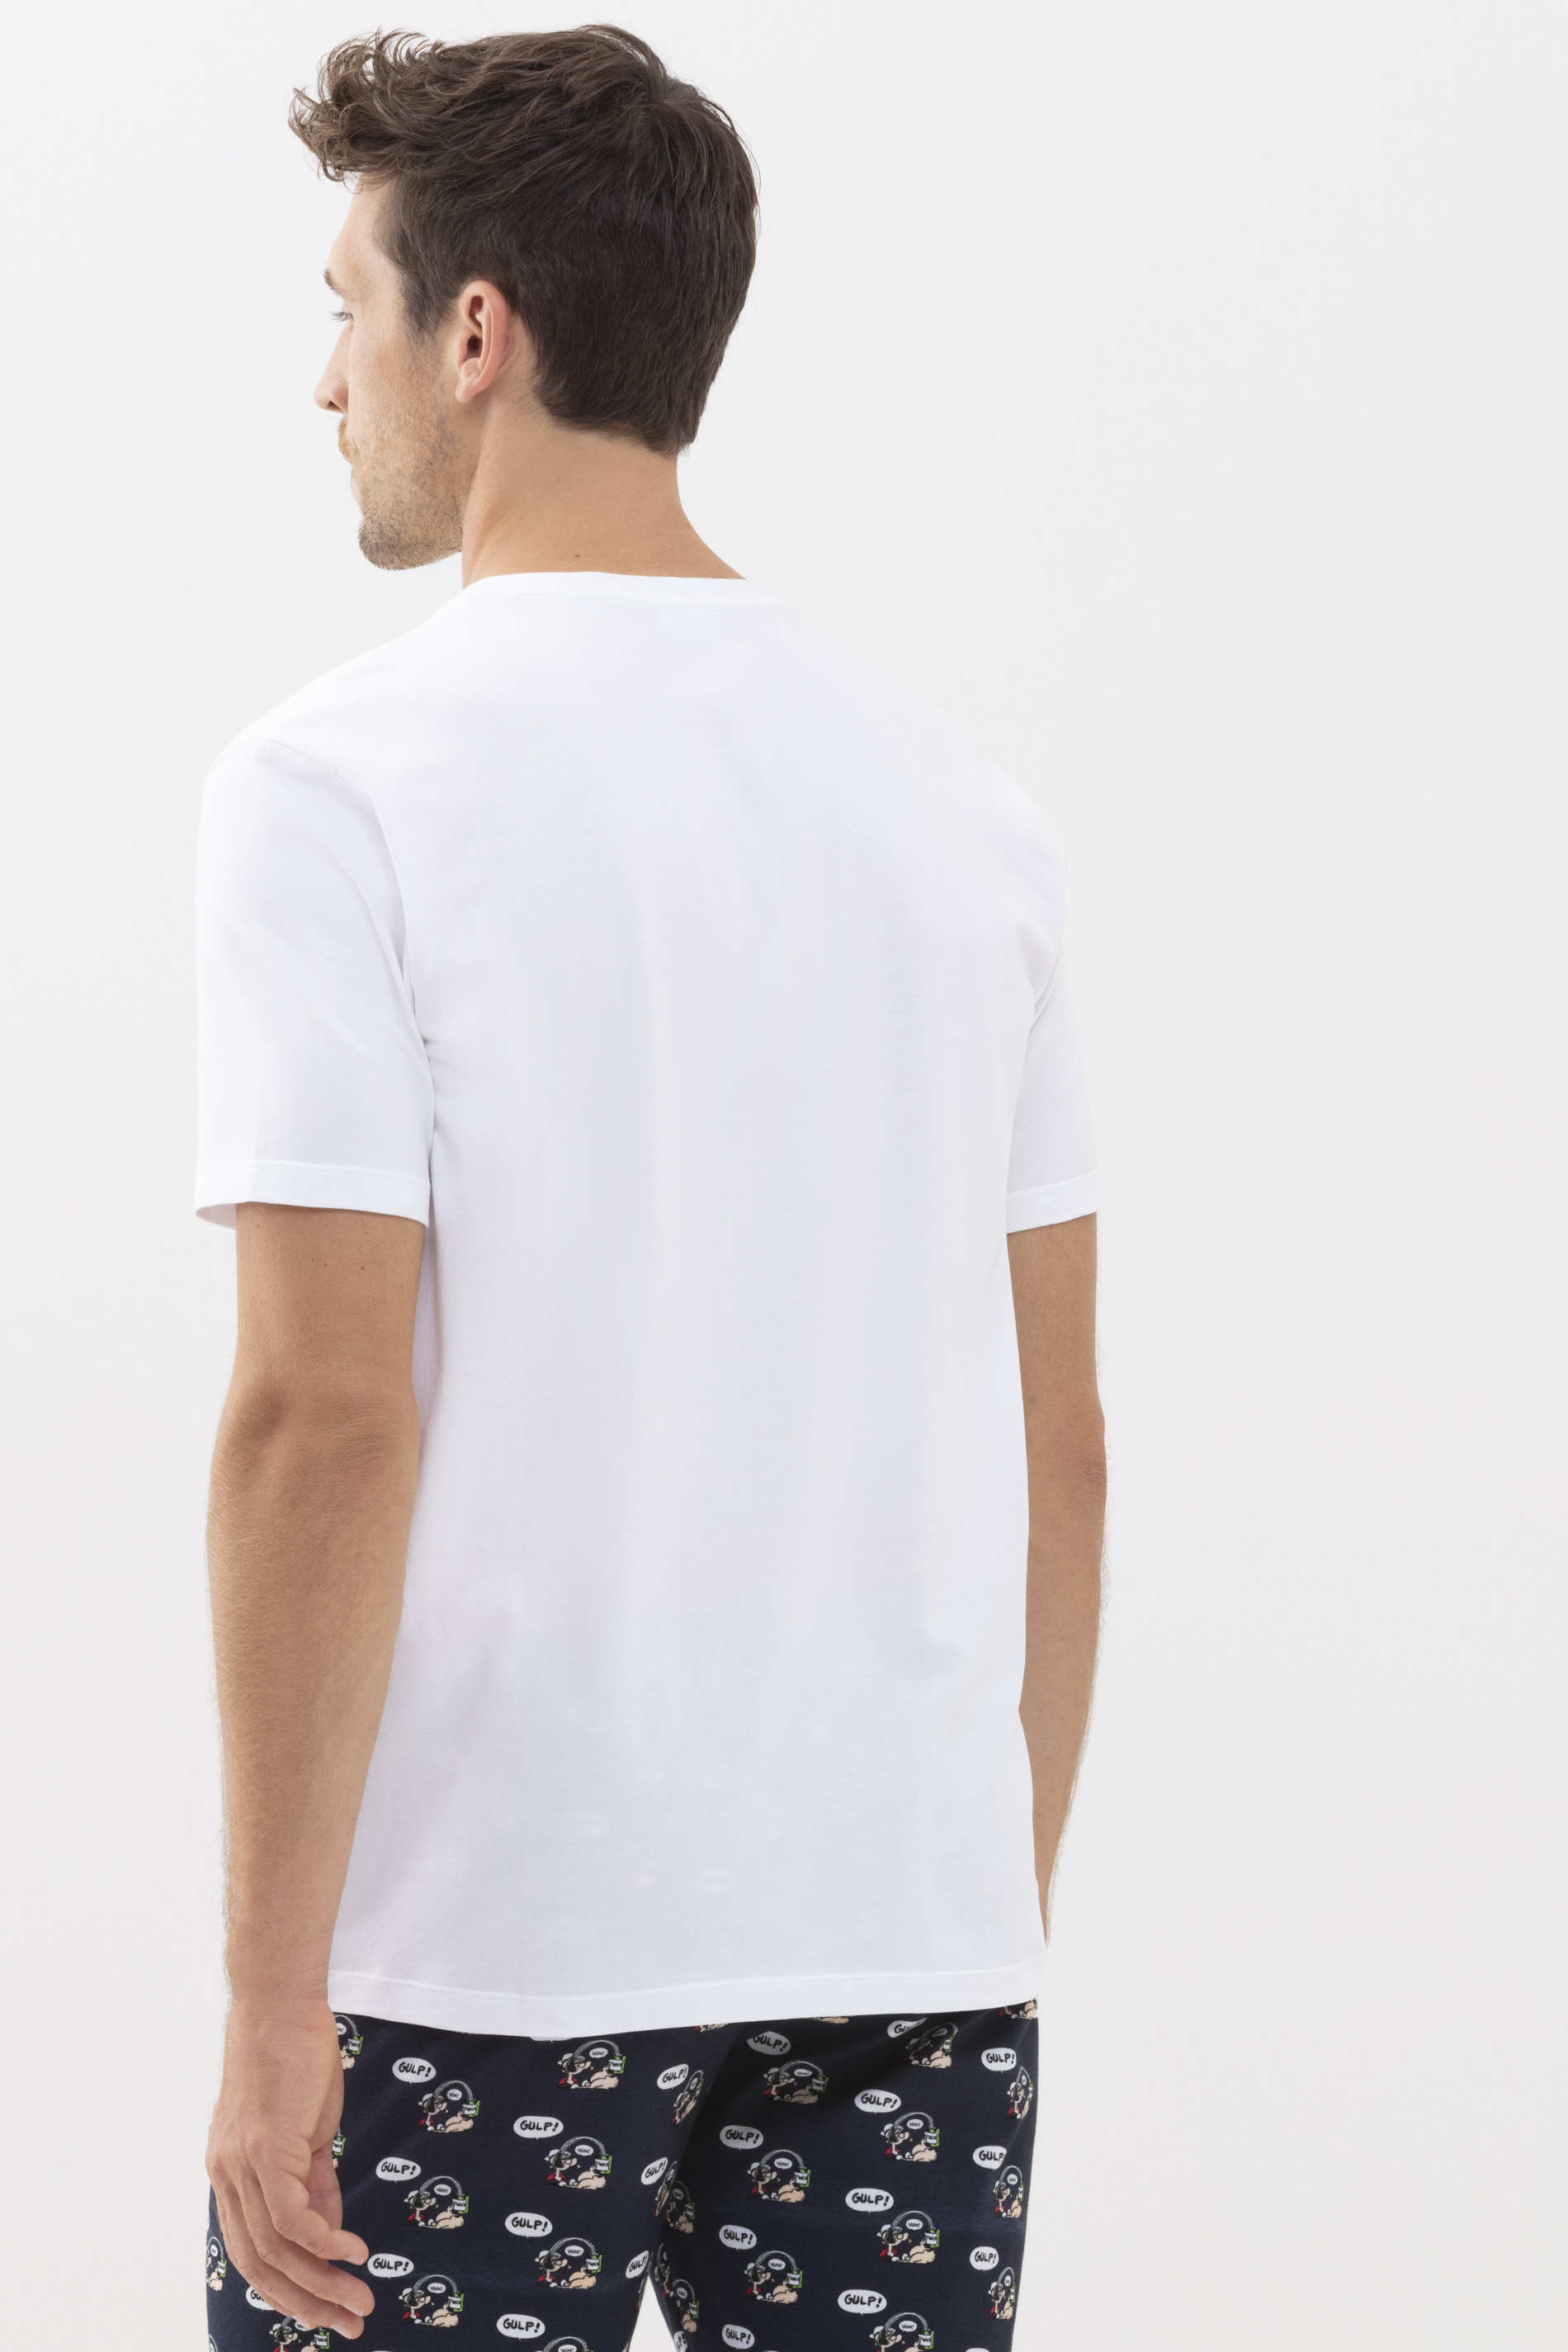 T-shirt Wit Serie POPEYE©xMEY Achteraanzicht | mey®